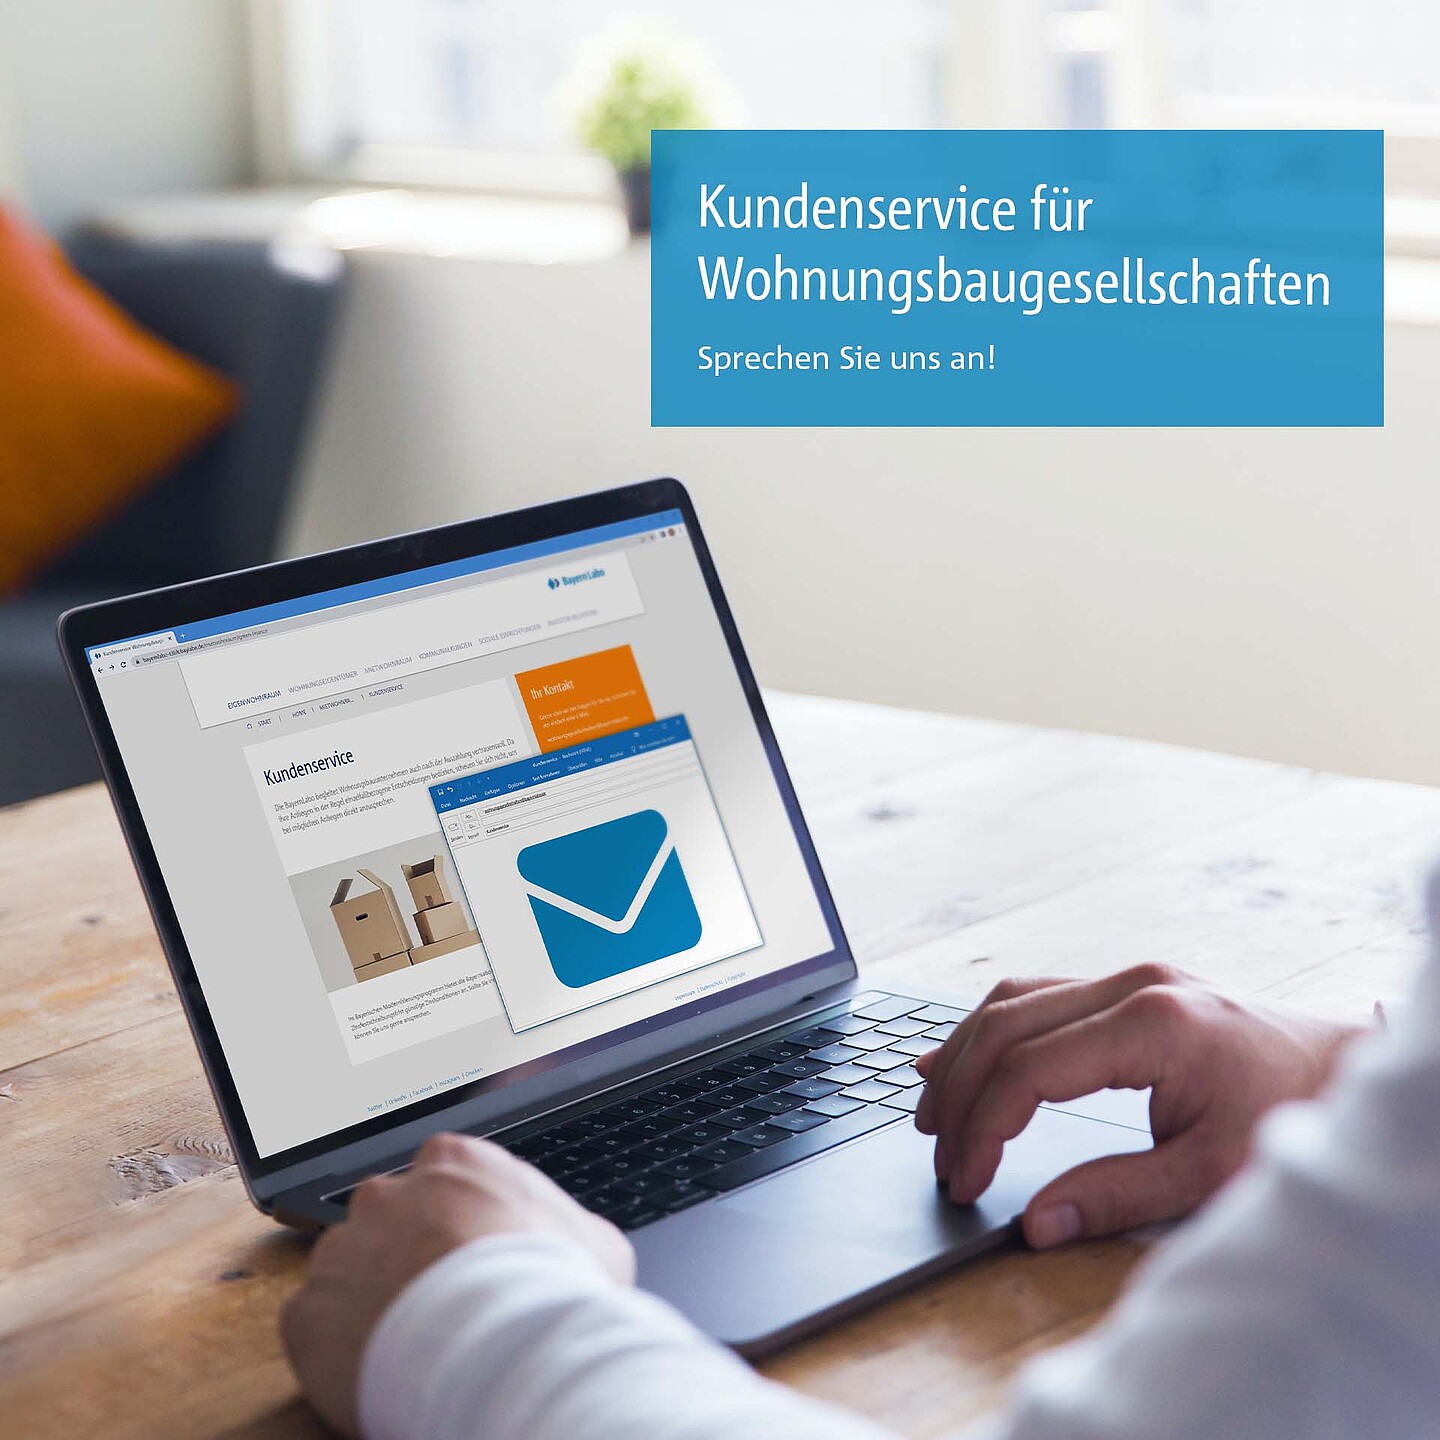 Laptop mit Kundenservice-Mail der BayernLabo als Ansprechpartner.